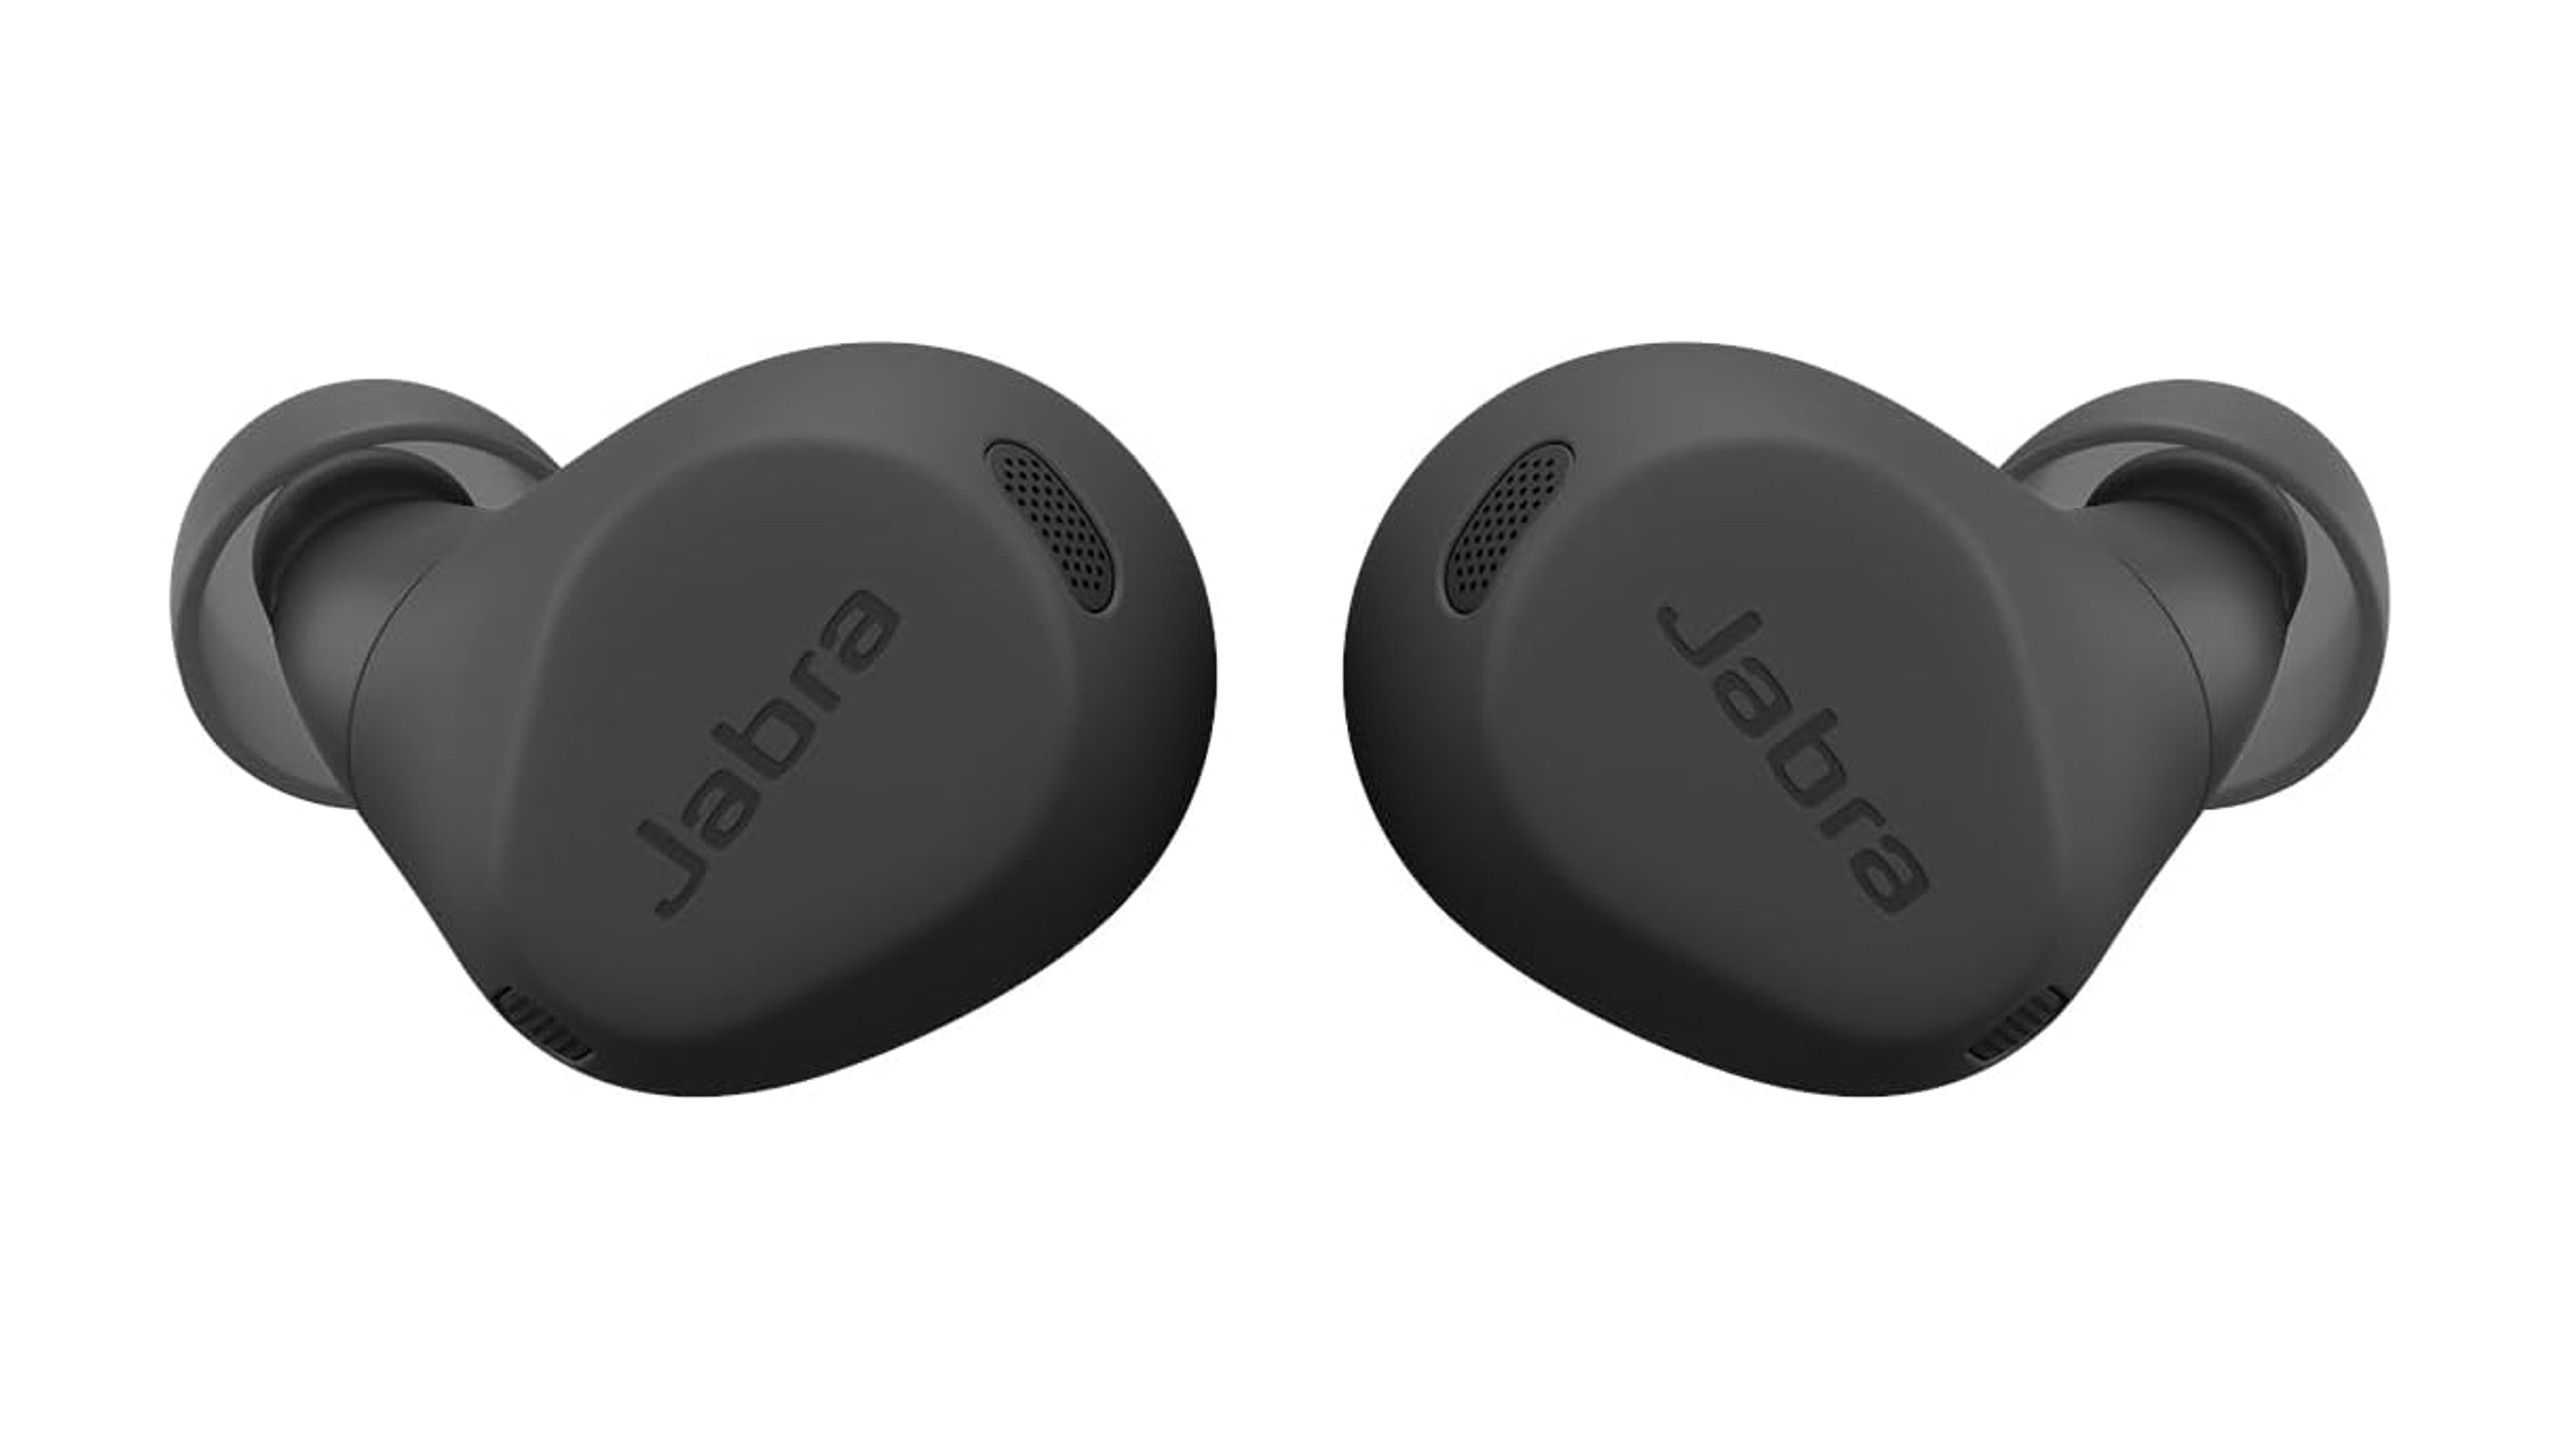 Jabra Elite 5 true wireless earbuds get dunked